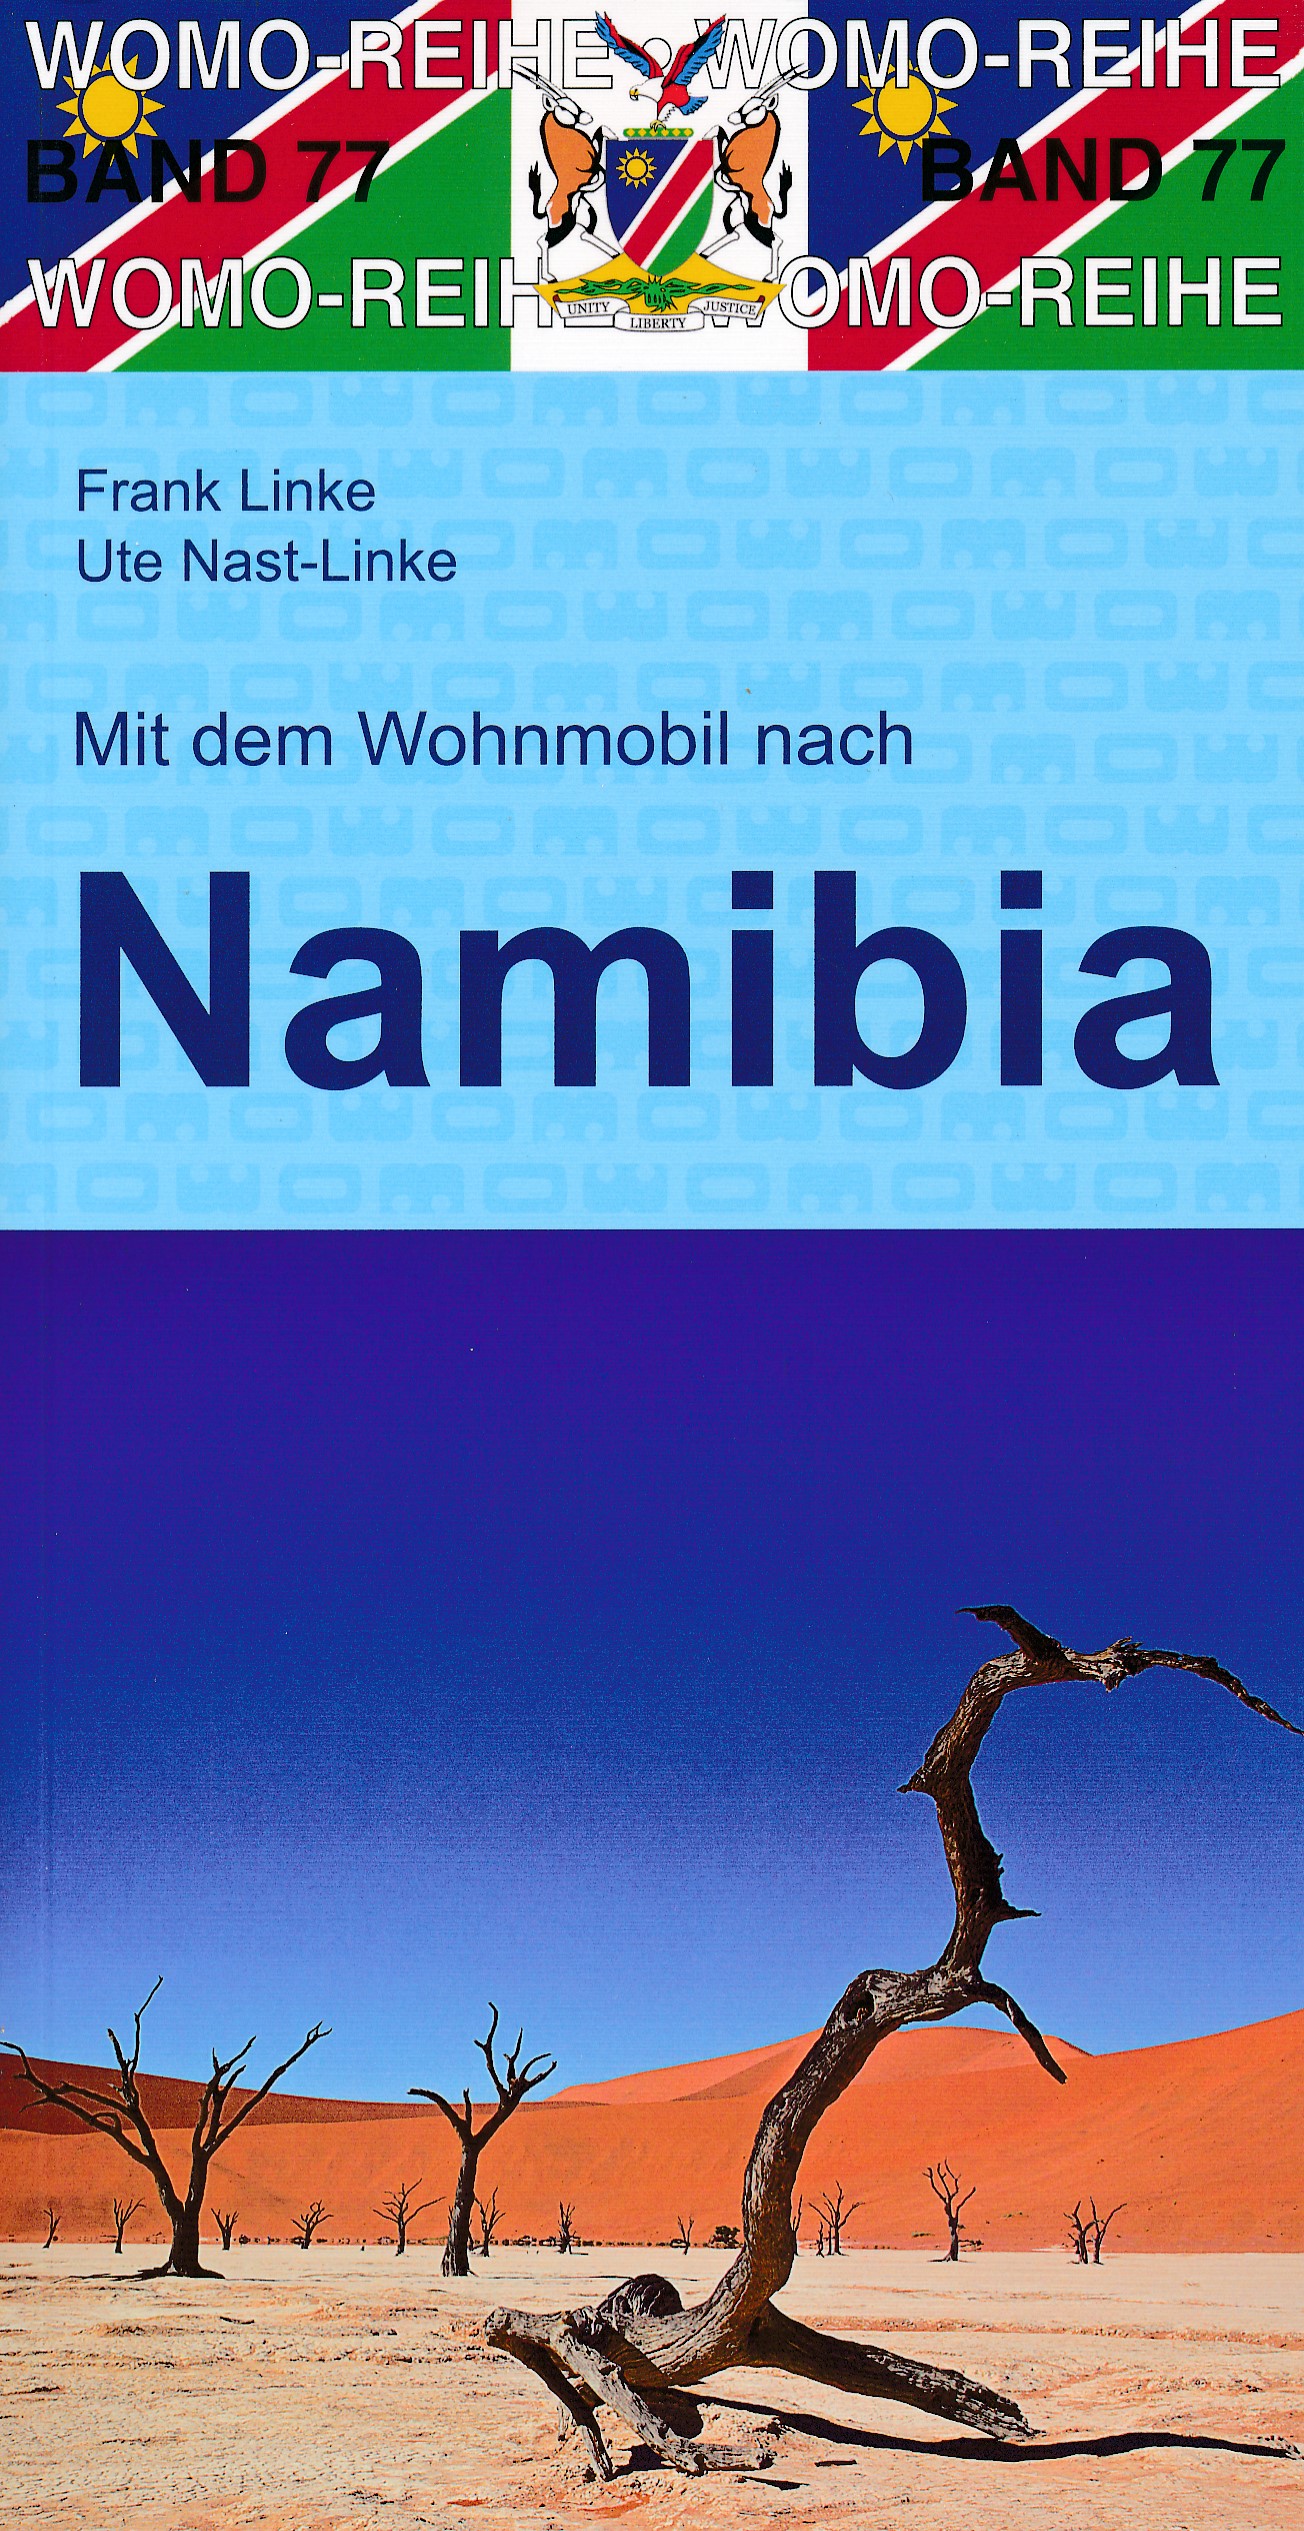 Online bestellen: Campergids 77 Mit dem Wohnmobil nach Namibia - Namibië Camper | WOMO verlag